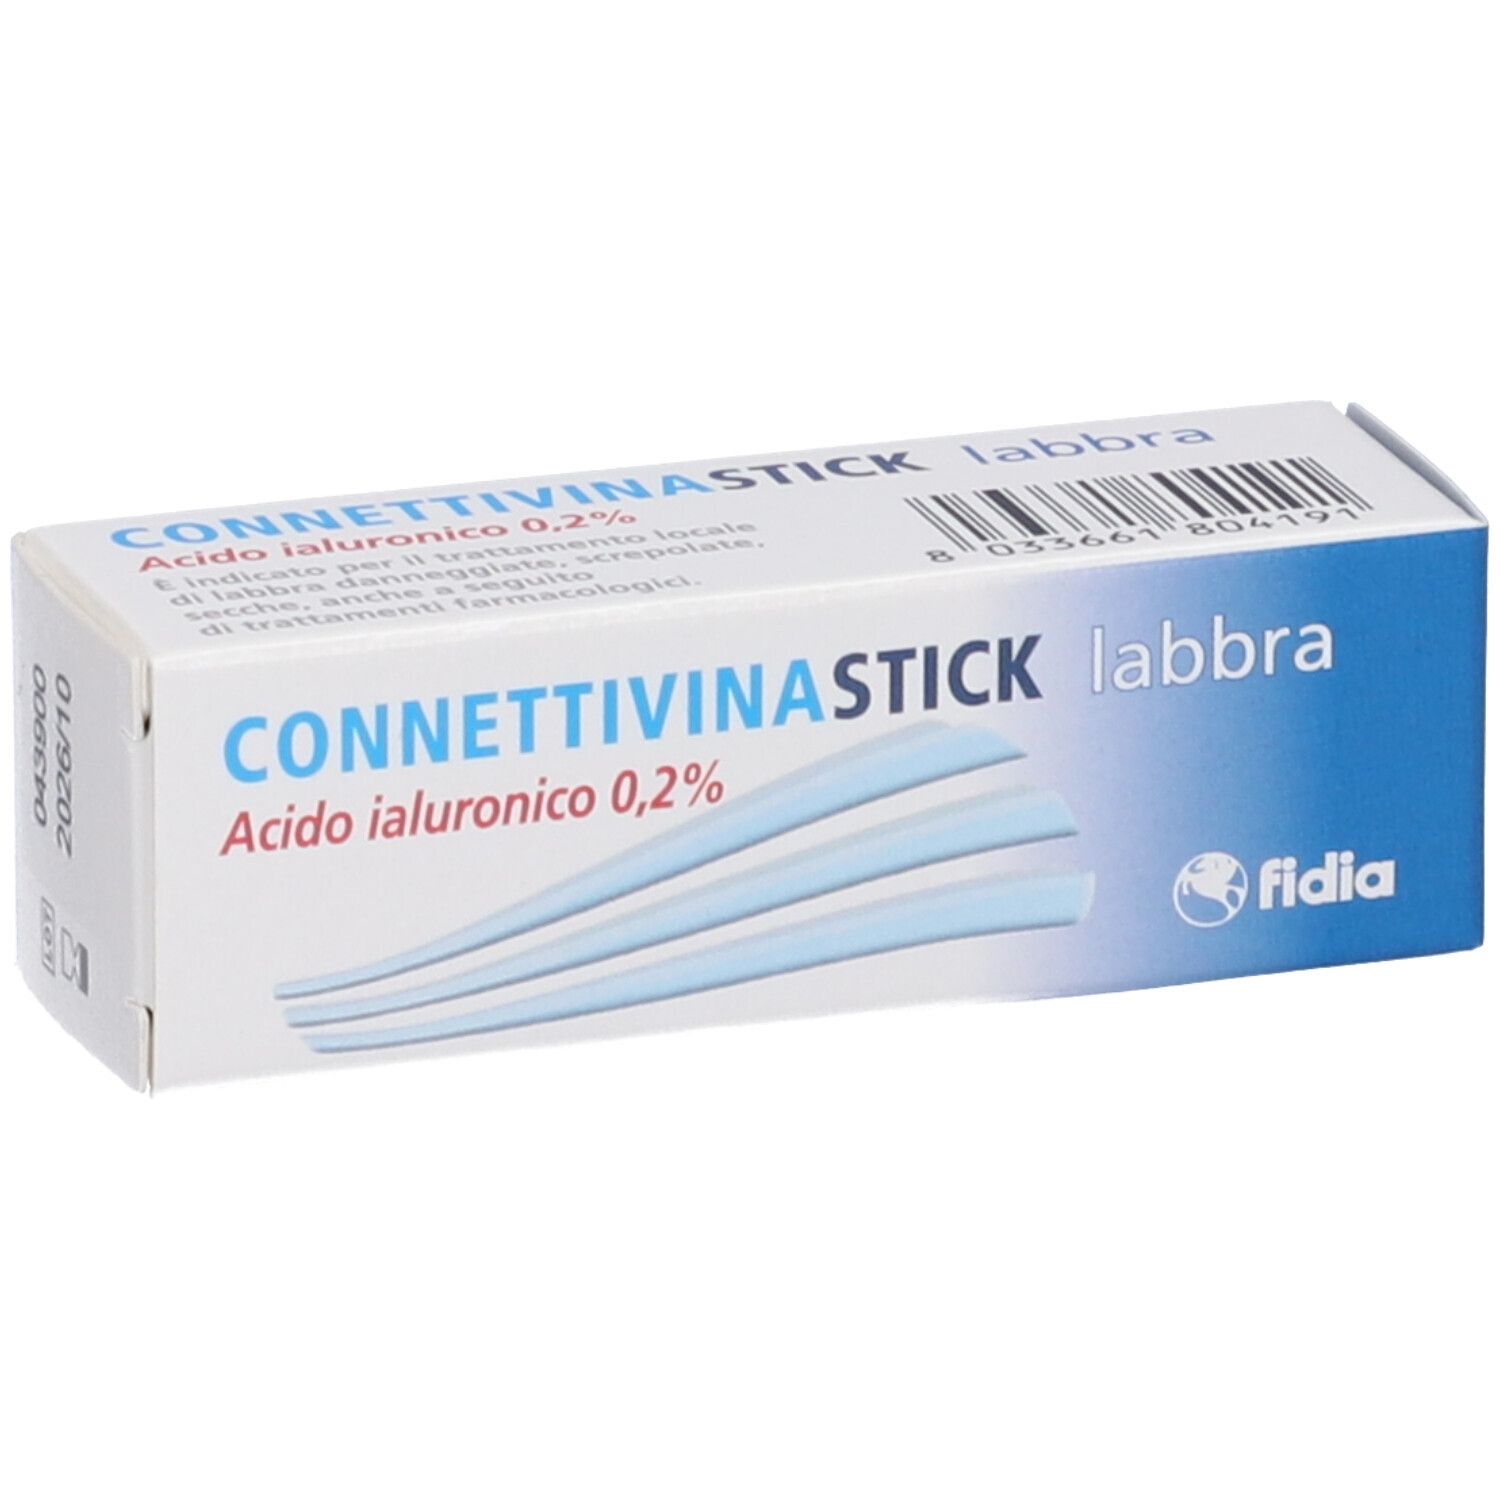 Connettivina Stick Labbra 3g, Farmacia Soccavo